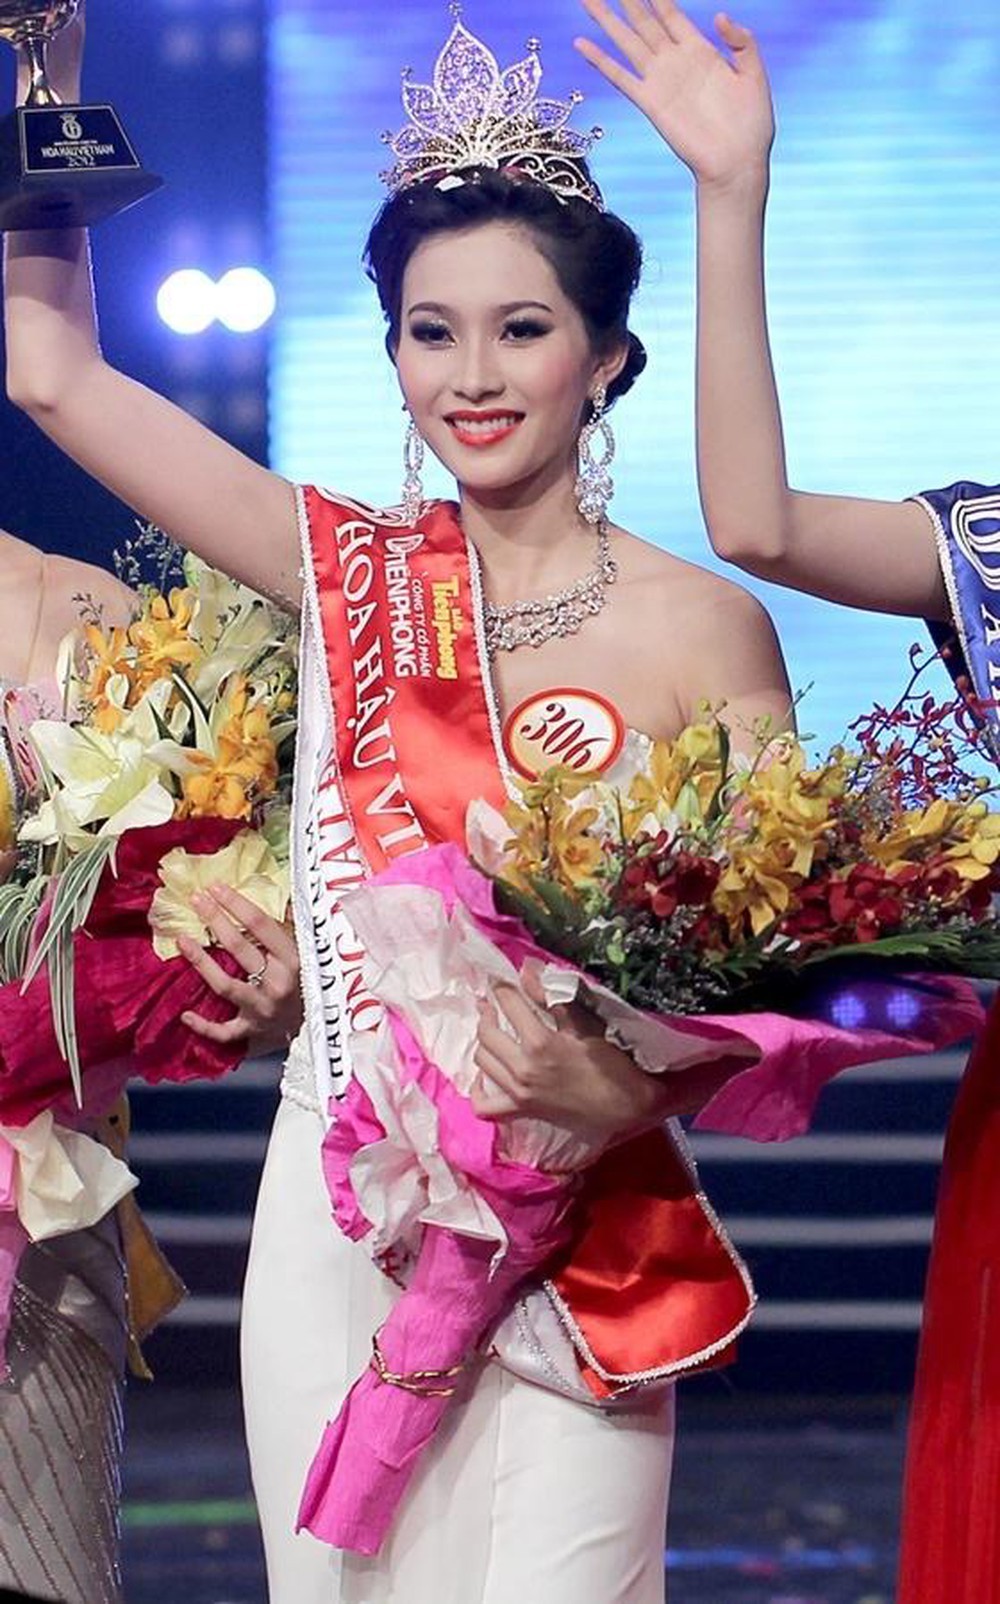  
Đặng Thu Thảo được xem là "Hoa hậu của các Hoa hậu" vì vẻ ngoài thuần Việt, nhẹ nhàng, đặc biệt là gương mặt thanh tú. (Ảnh: Minh họa)